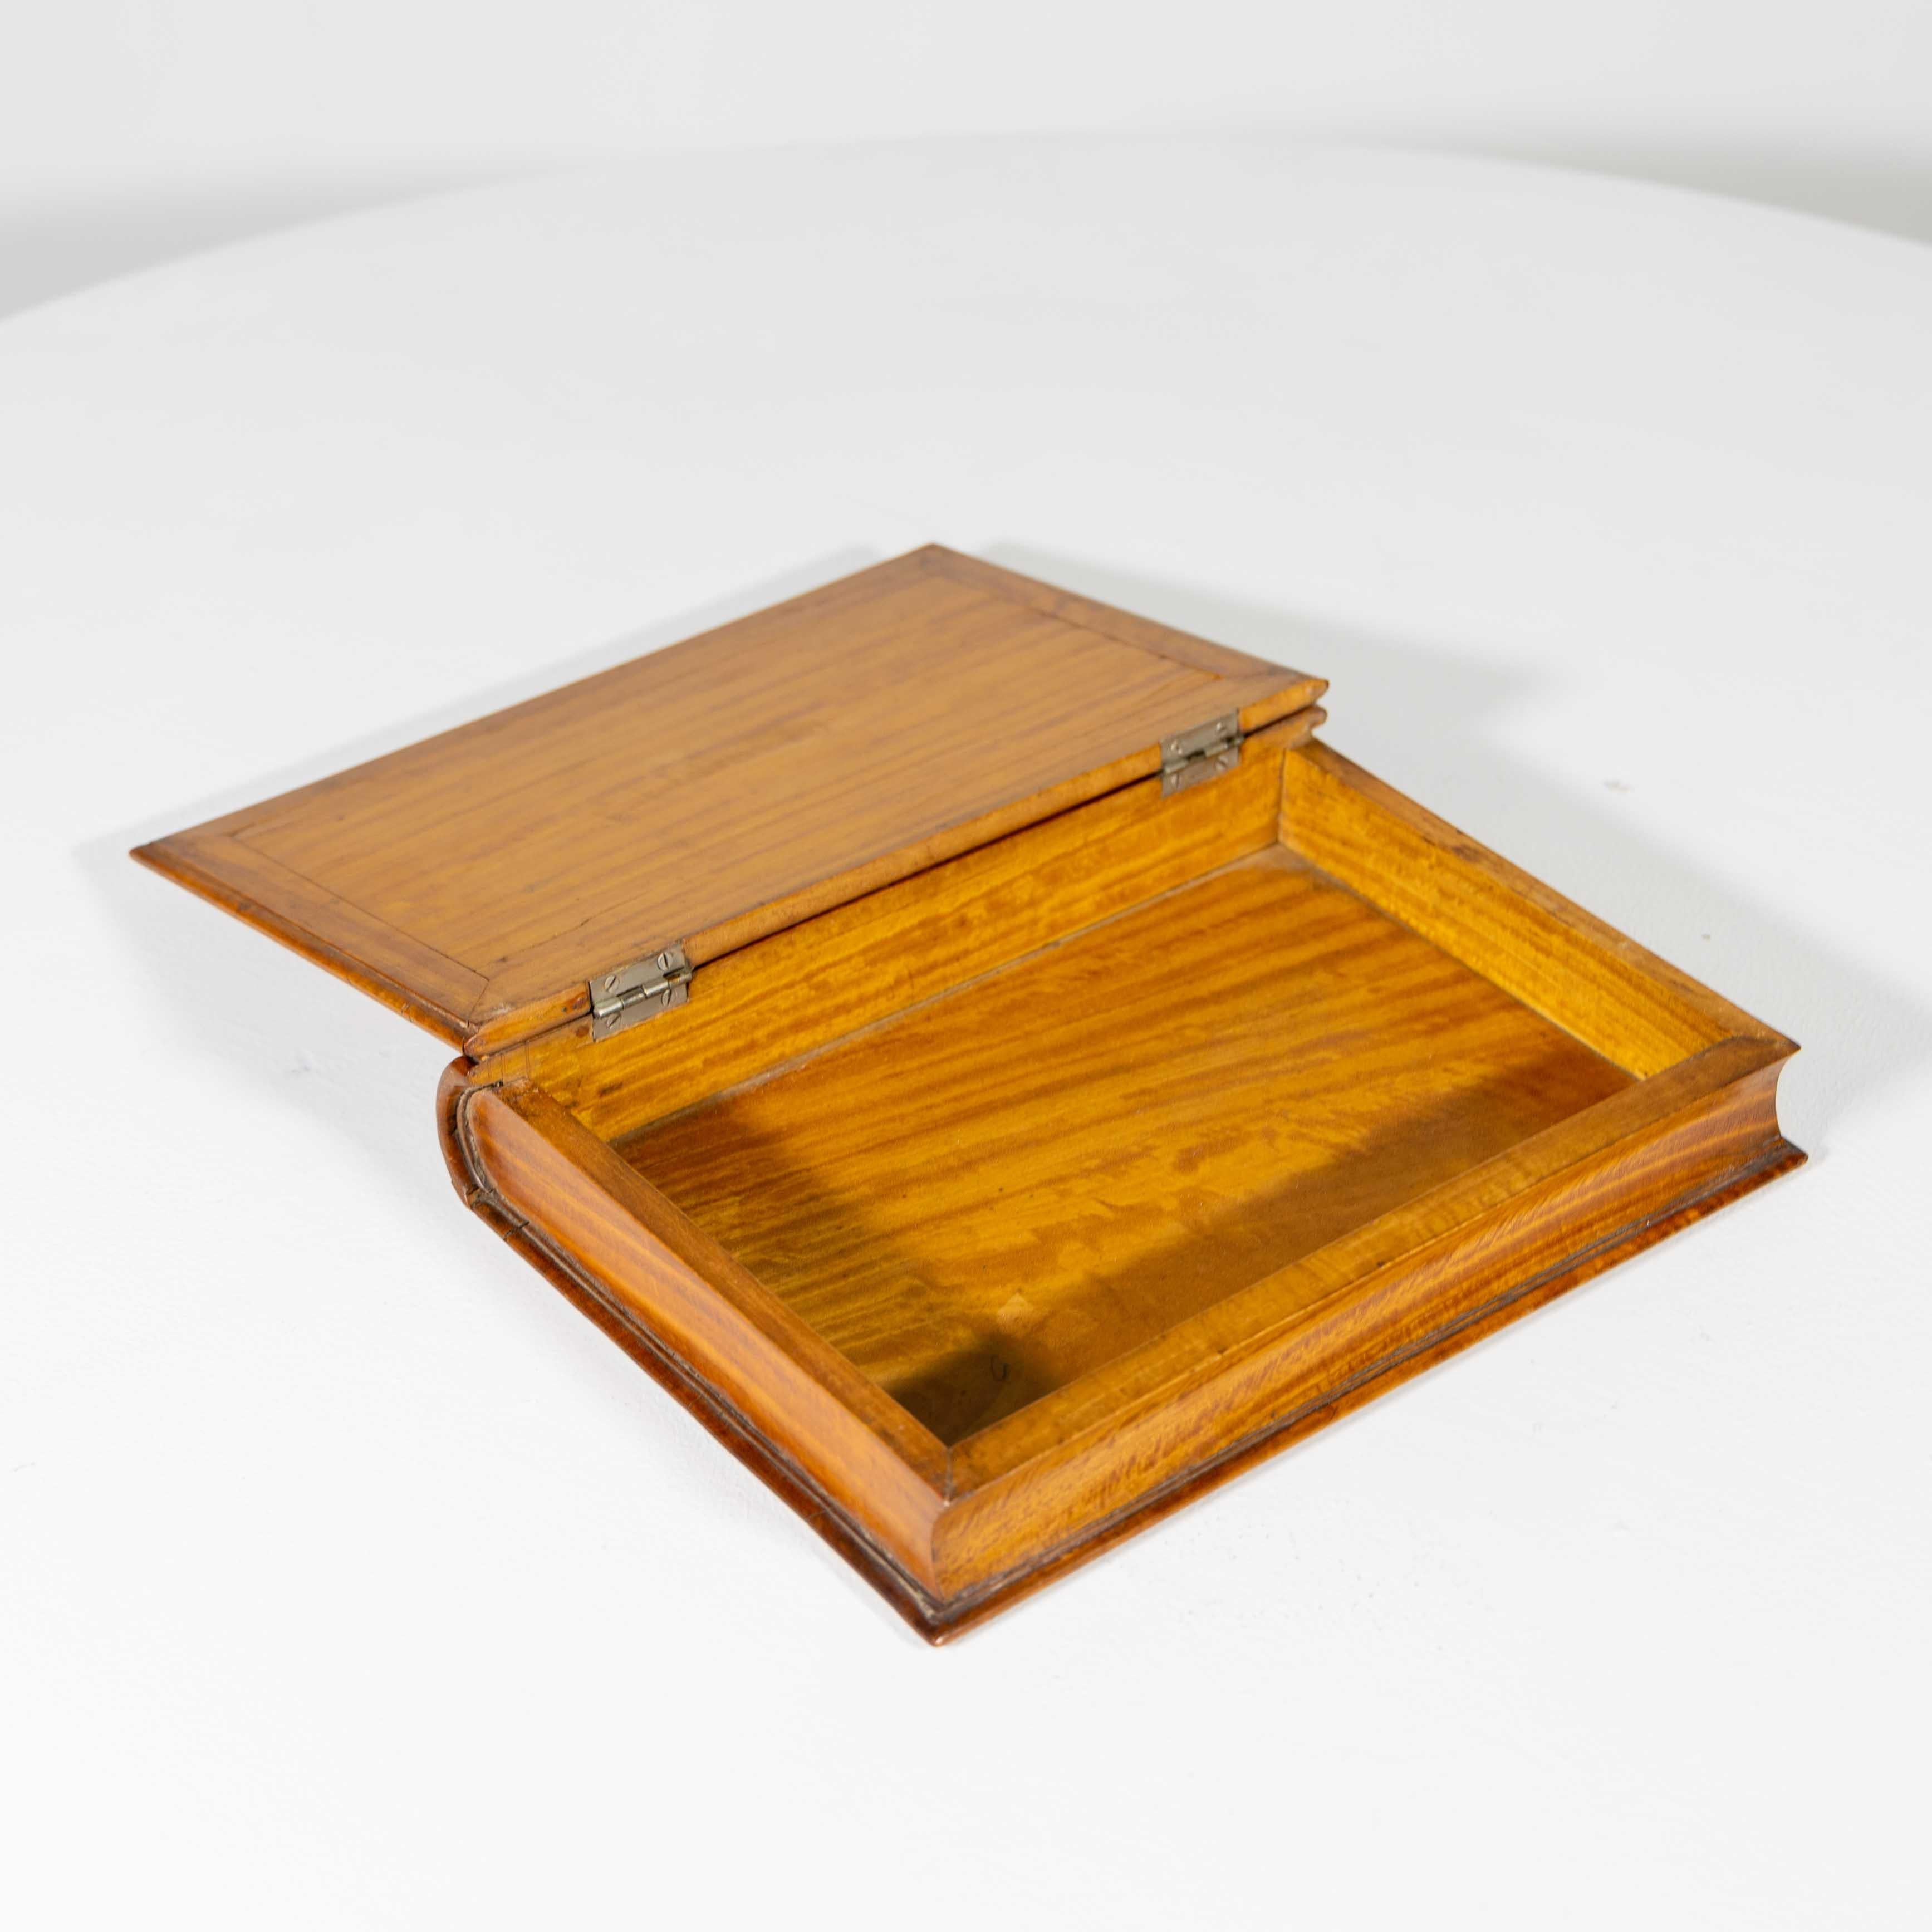 Boîte à bijoux anglaise décorative en bois de citronnier en forme de livre avec des incrustations de fils et de nervures sur le couvercle à charnière.